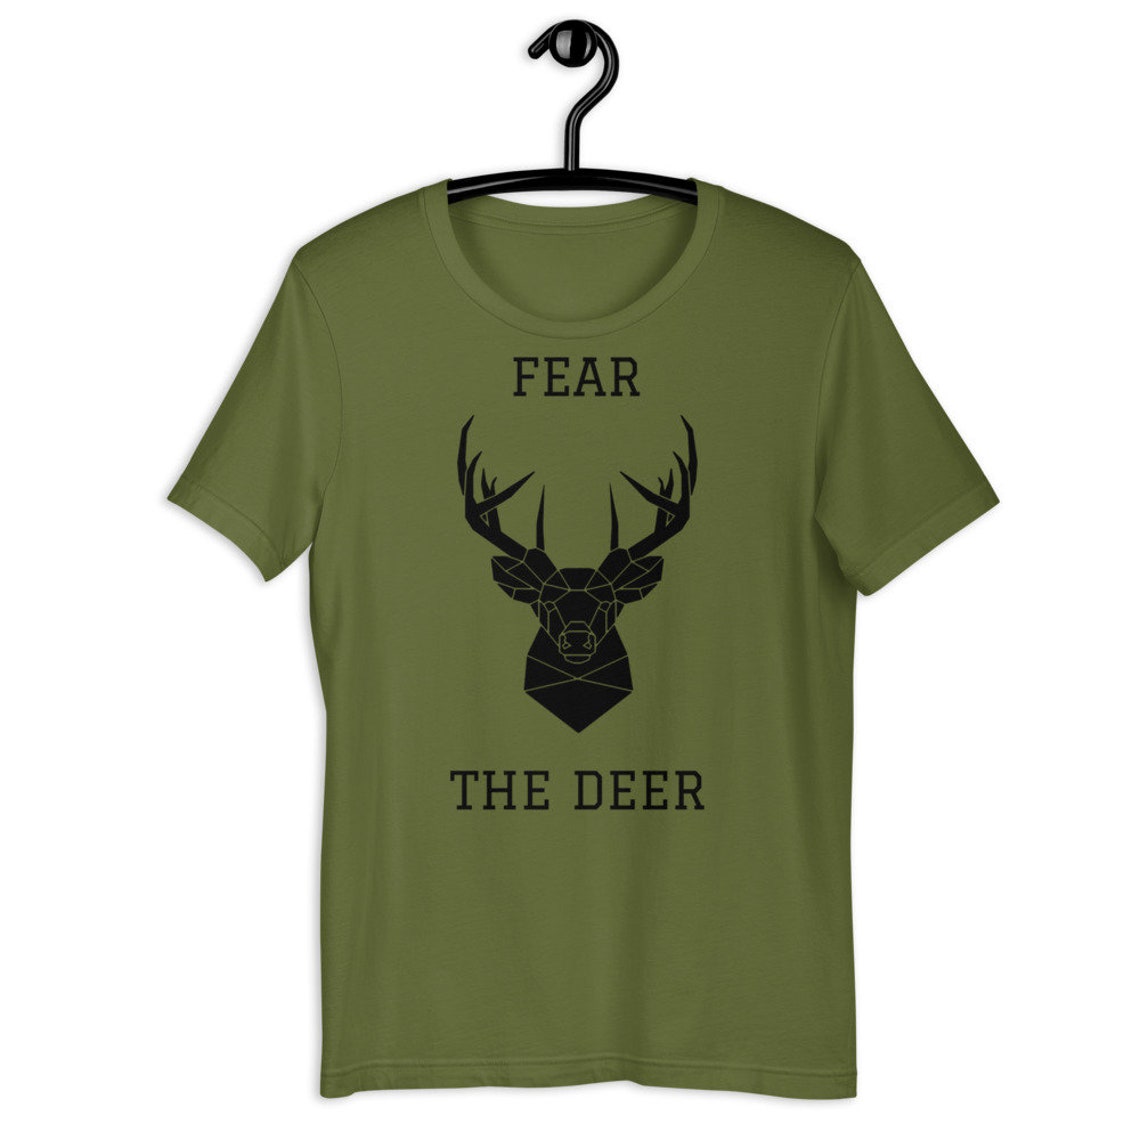 Fear The Deer Fear The Deer Shirt Milwaukee Bucks Shirt | Etsy